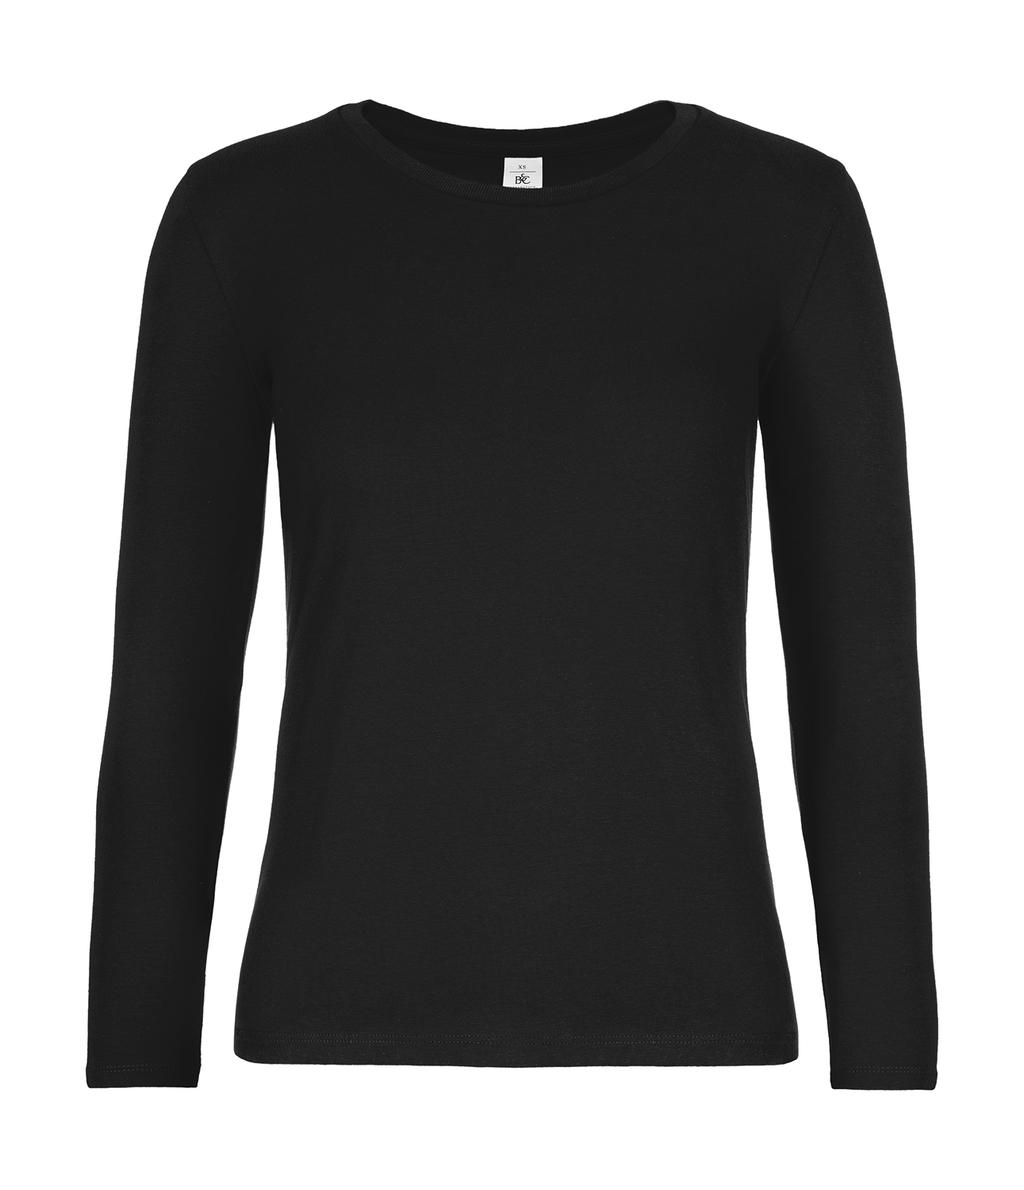 Dámske tričko s dlhými rukávmi #E190 - black